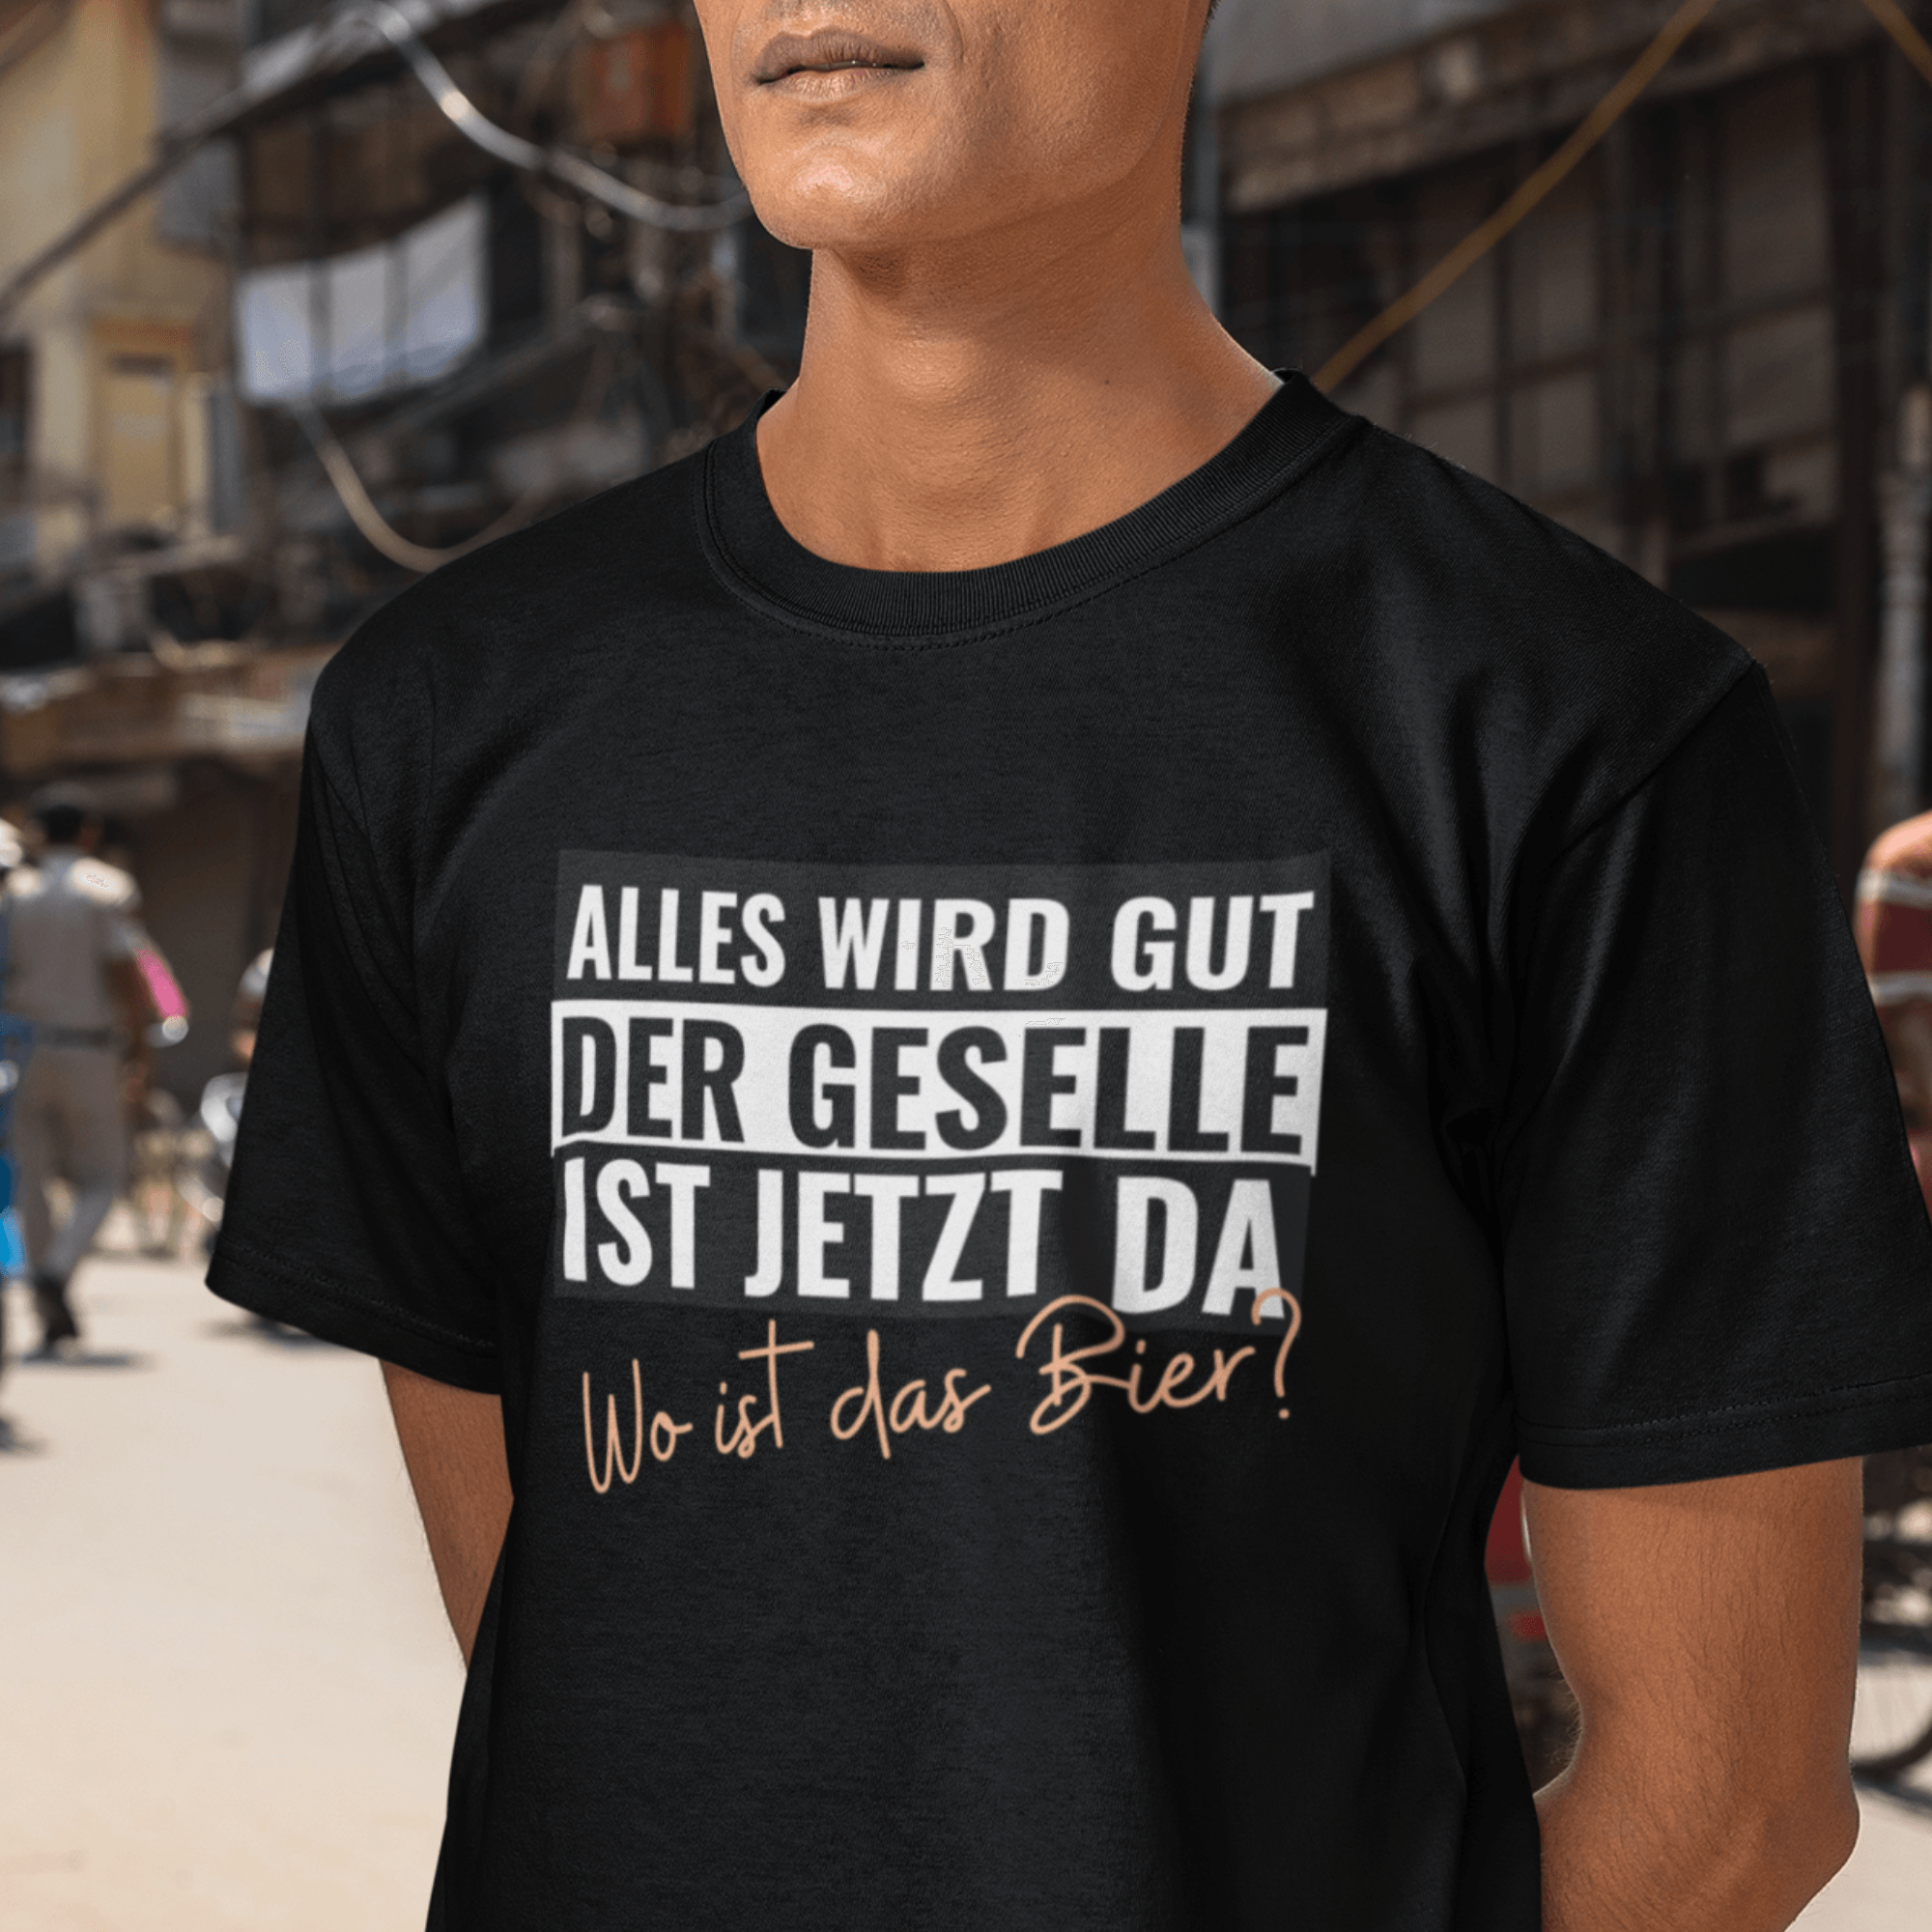 DER GESELLE - Herren Shirt - einschenken24.de